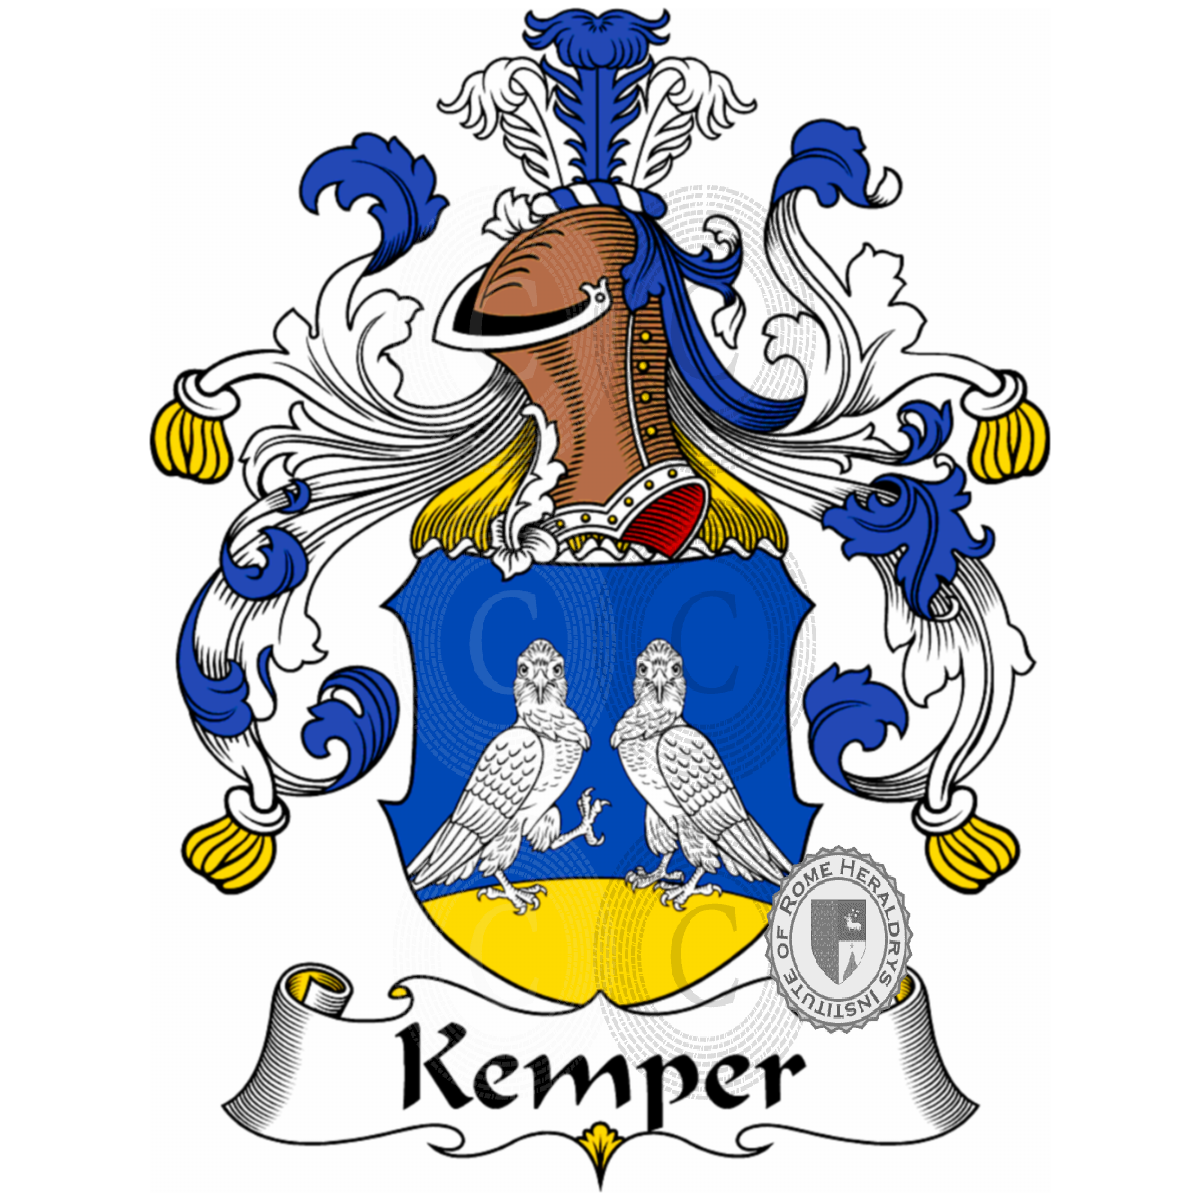 Wappen der FamilieKemper, de Bosh Kemper,Waterkemper